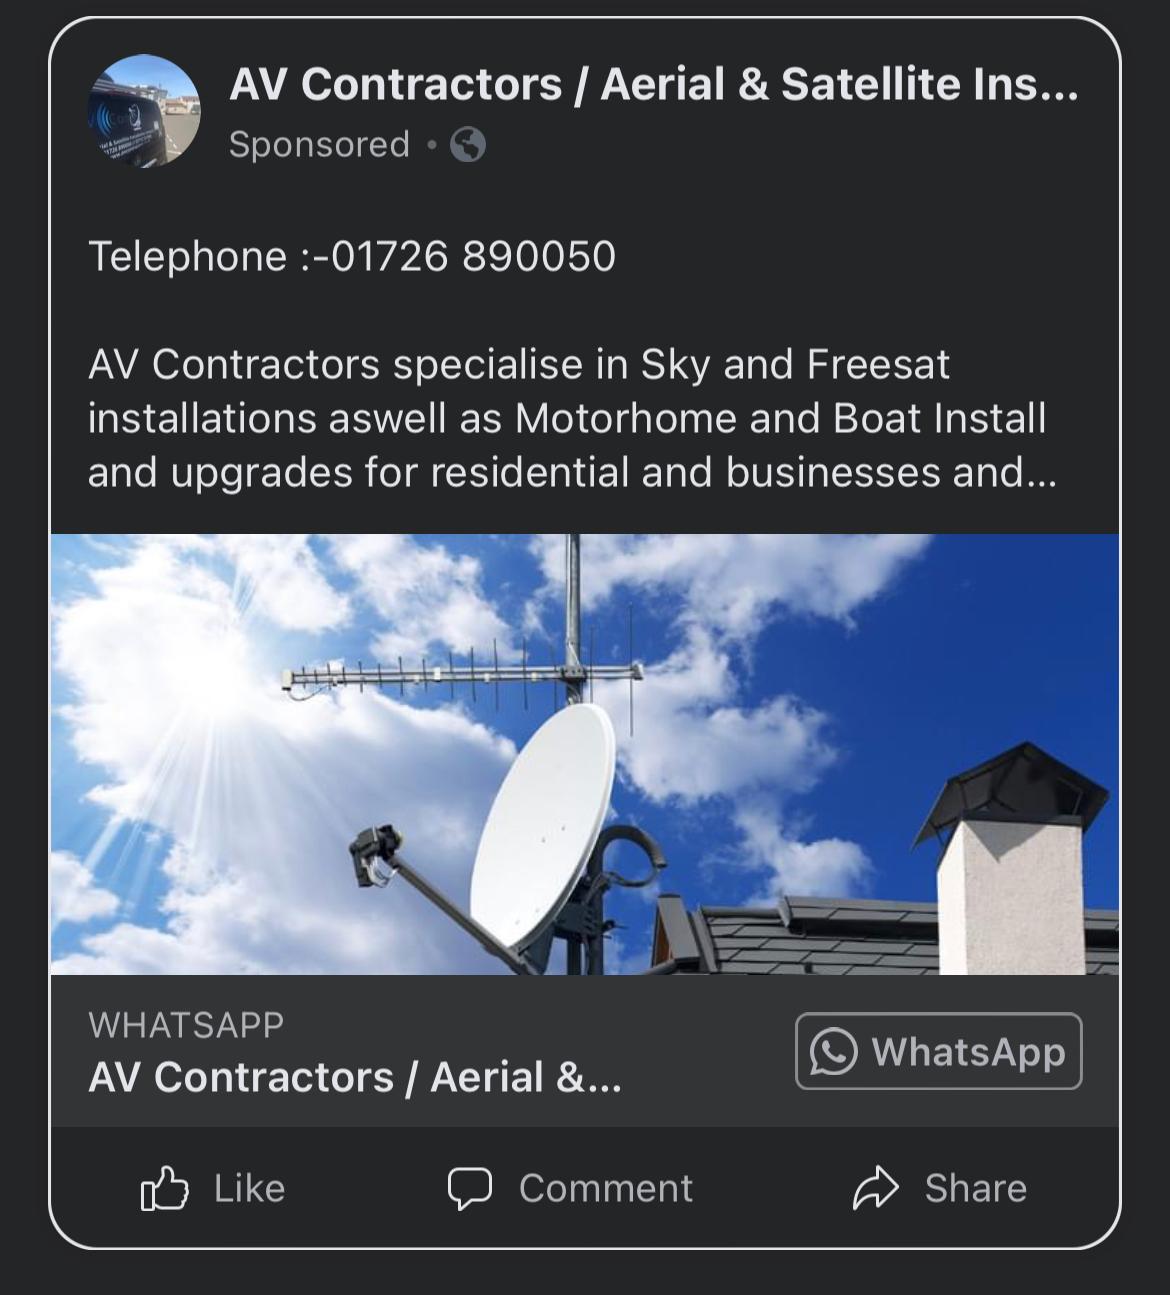 whats app contact details for AV Contractors is 07717317000